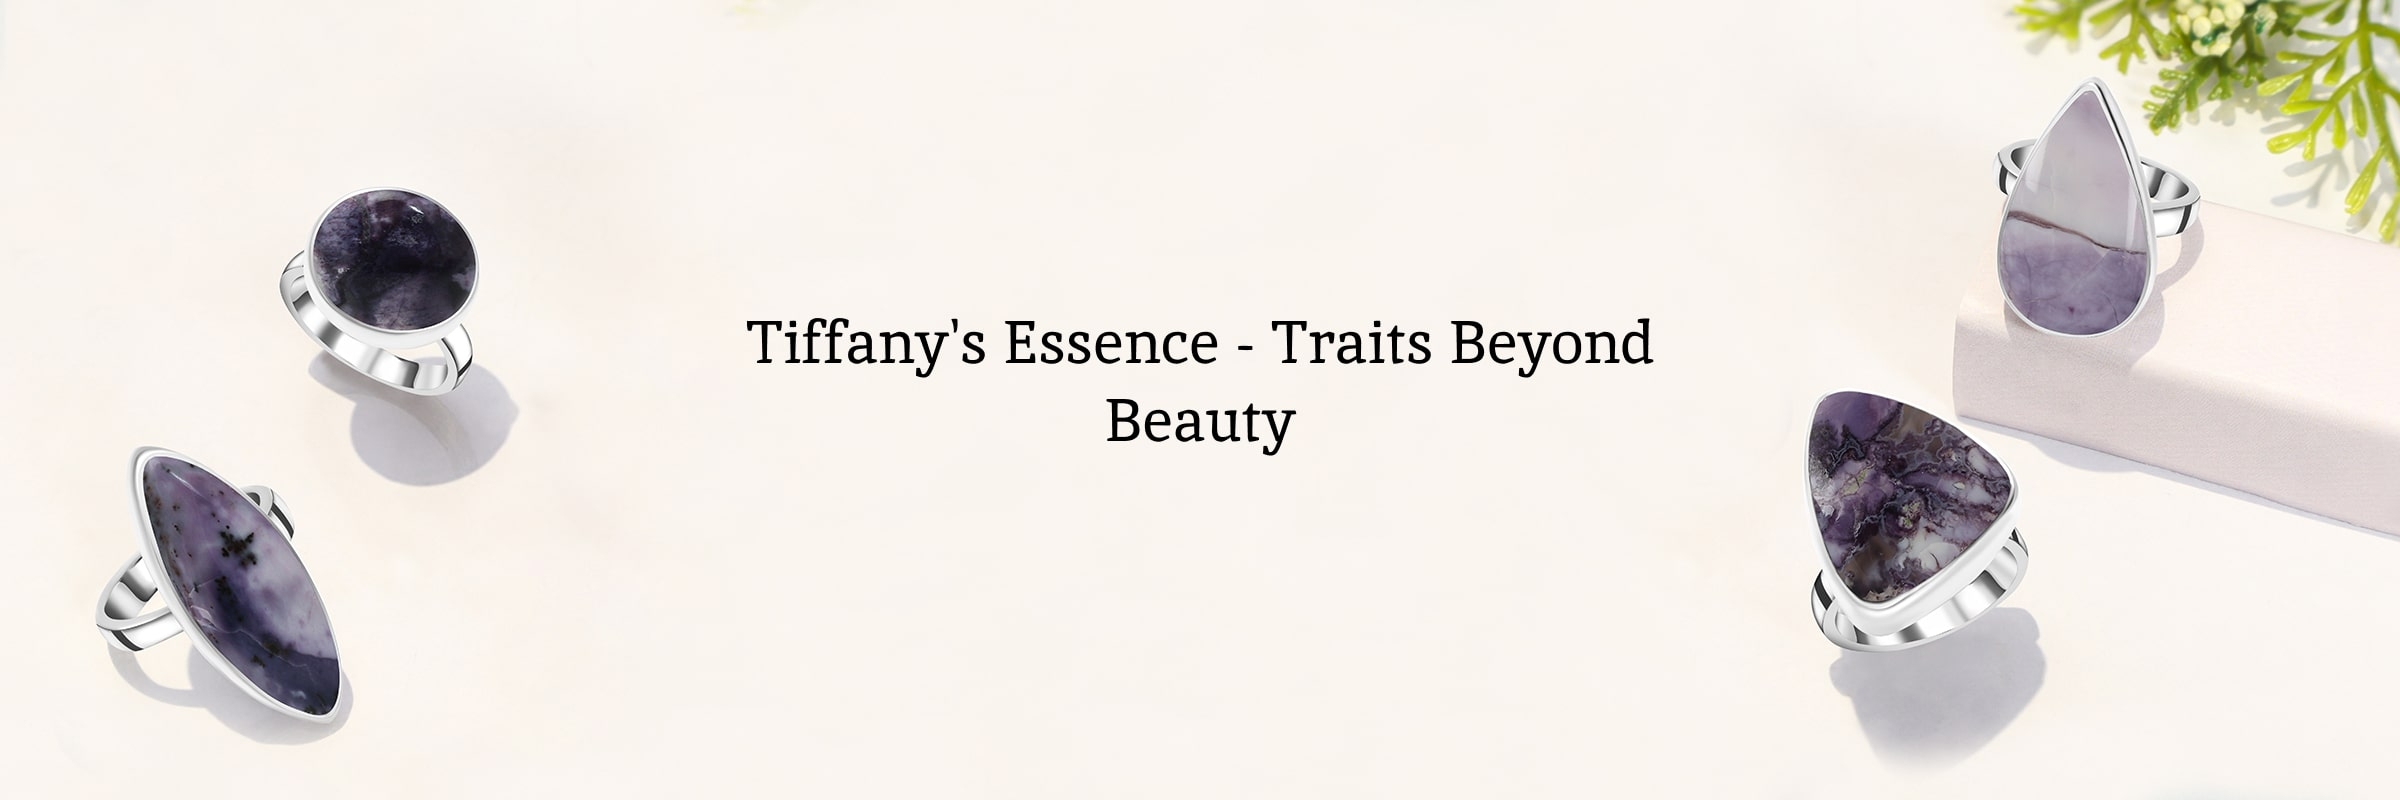 Characteristics of Tiffany